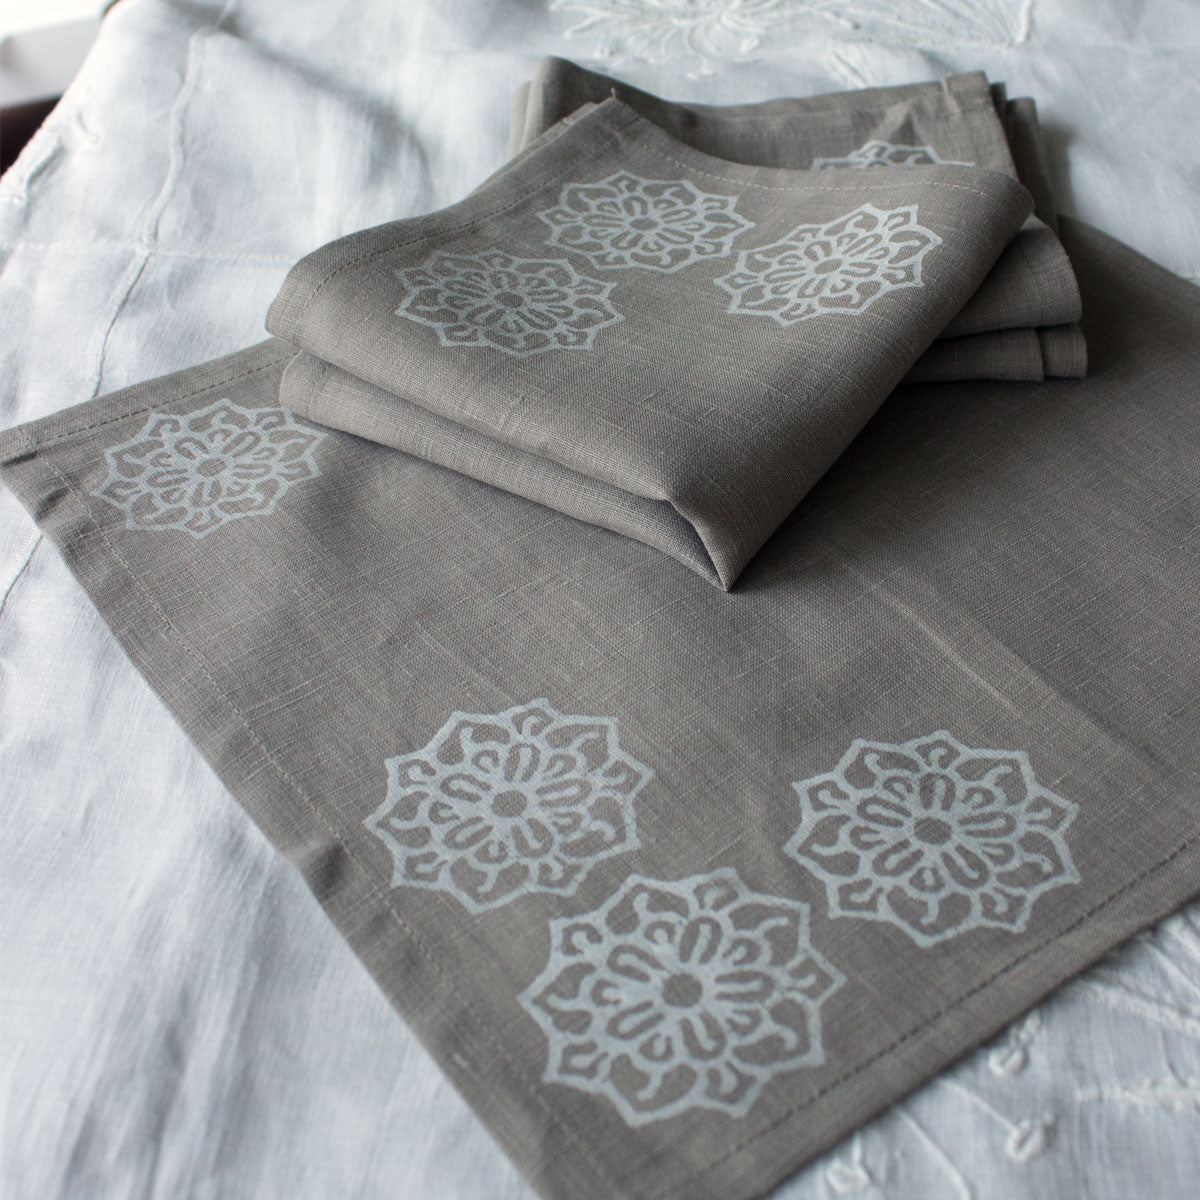 Block print cloth napkins in beige linen